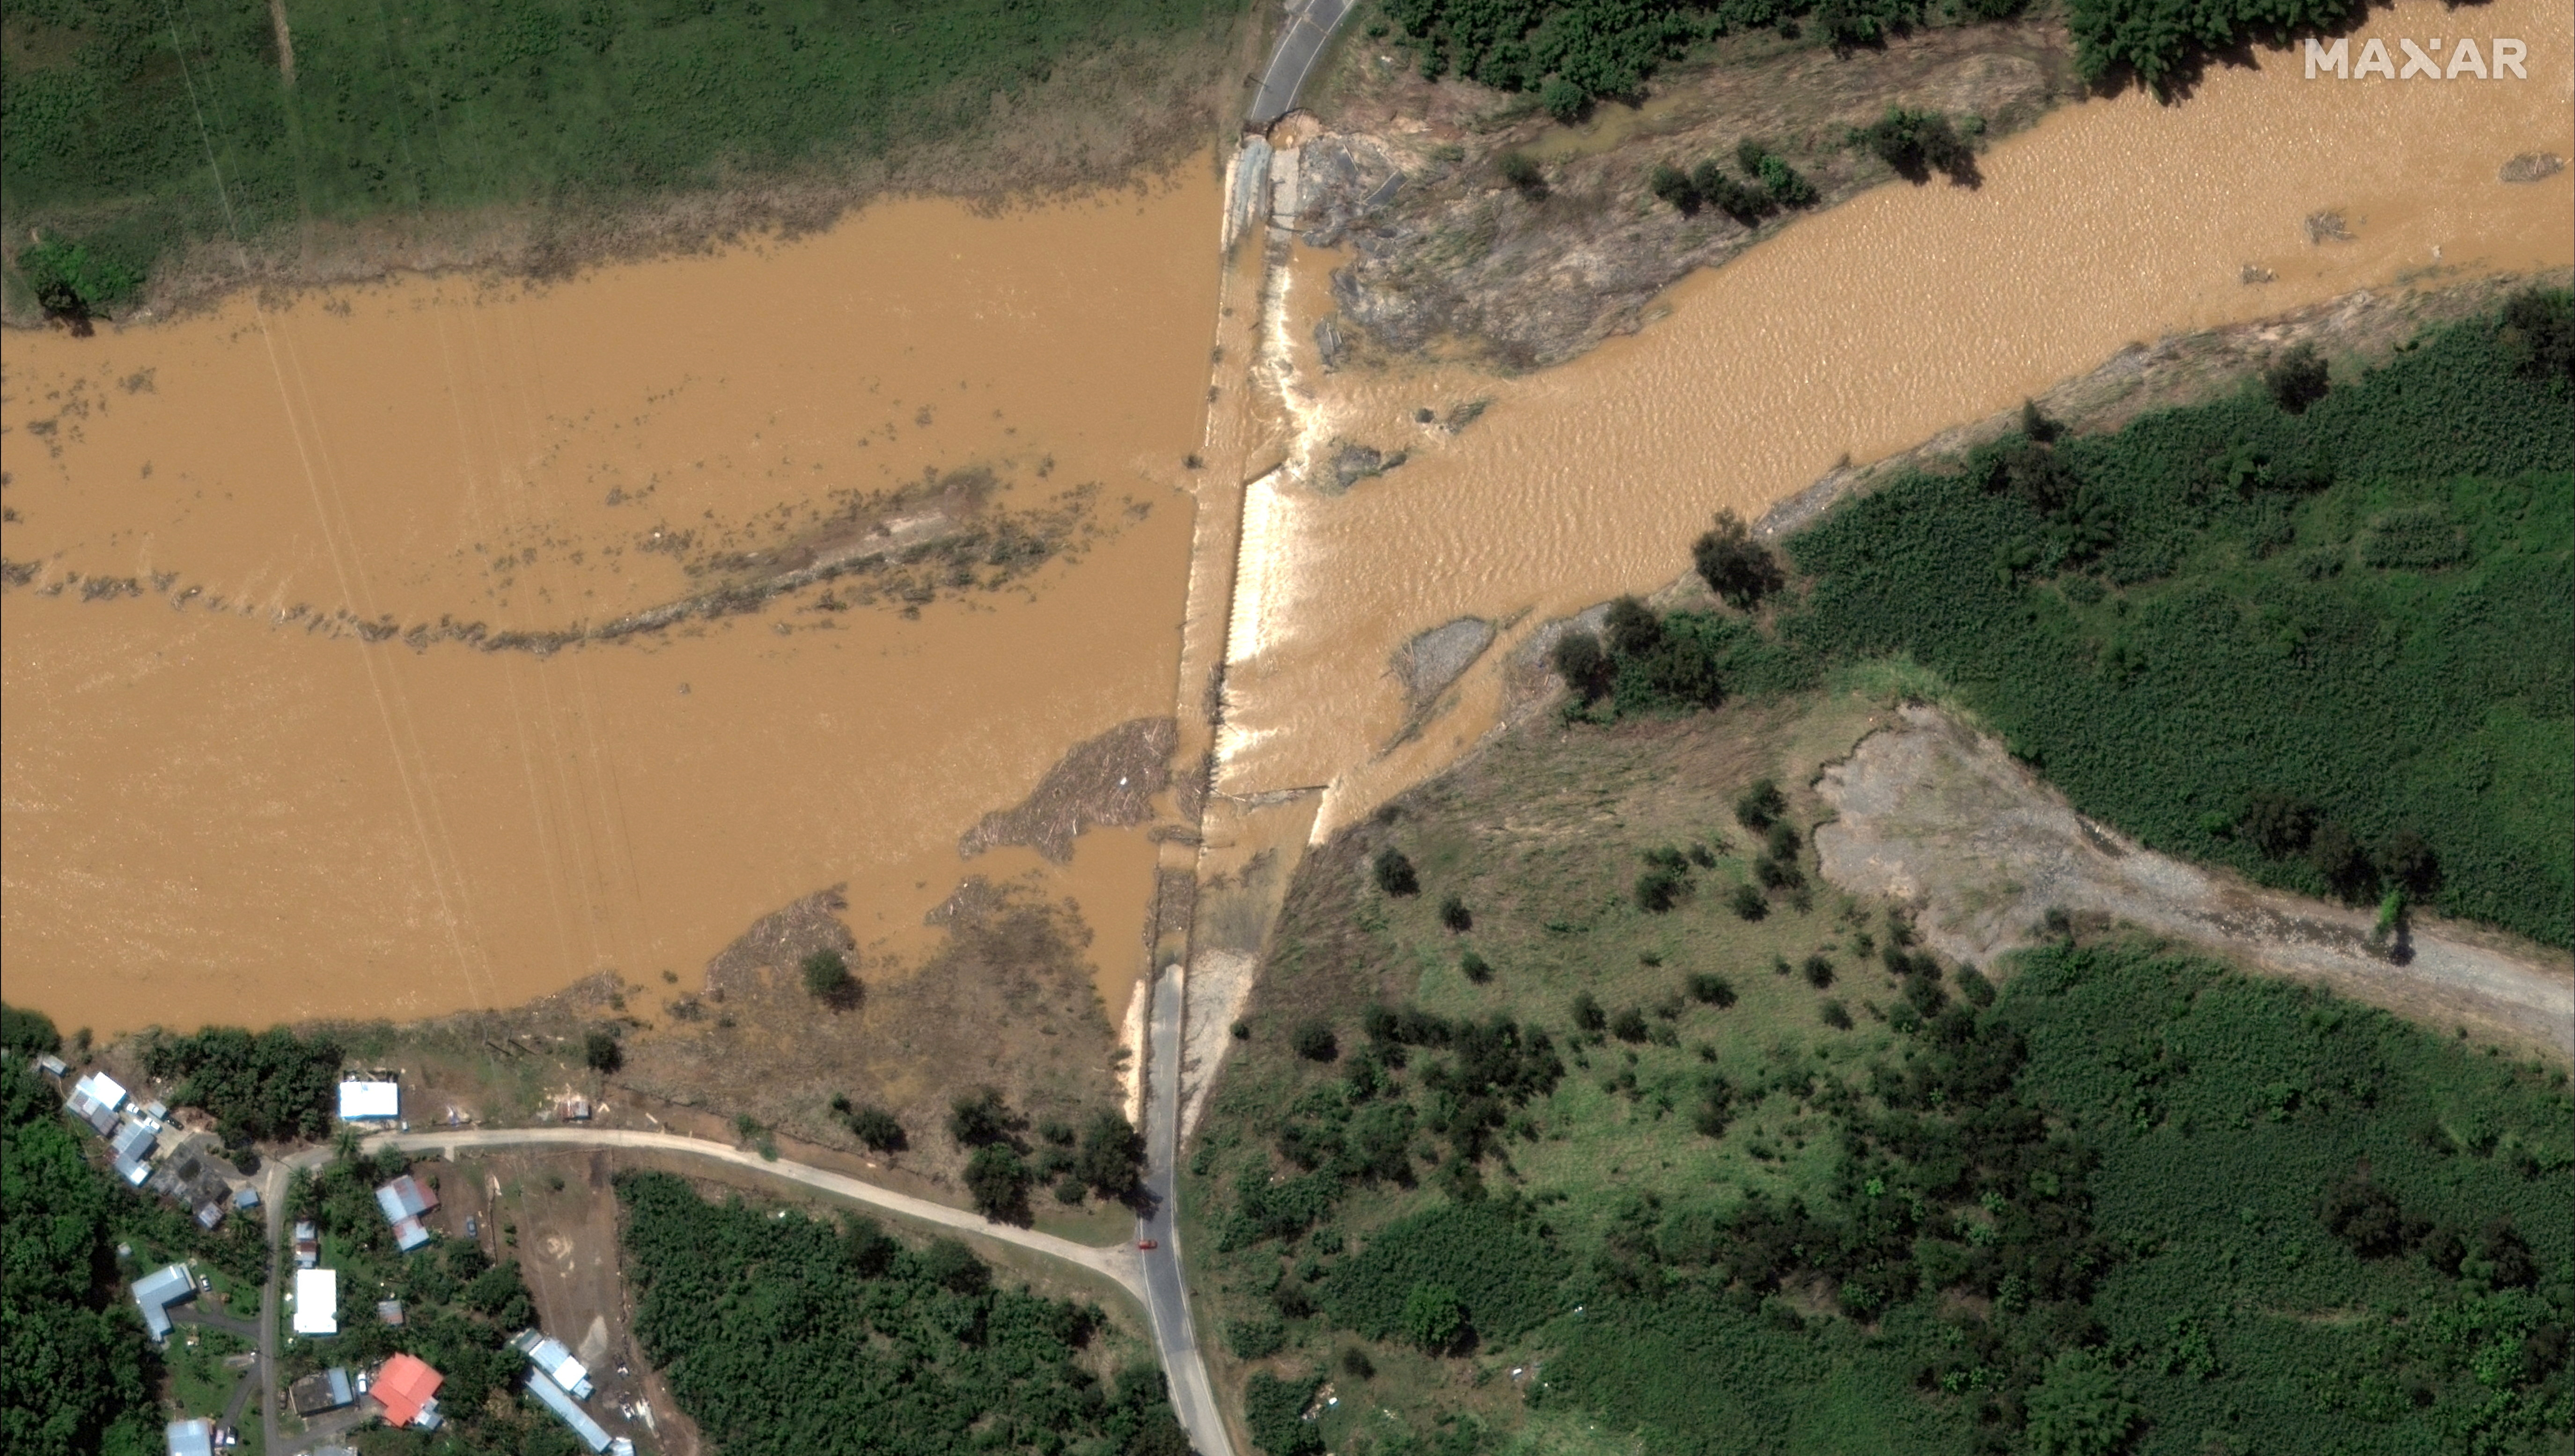 Una imagen satelital muestra un puente inundado después del huracán Fiona, en Arecibo. Cortesía de 2022 Maxar Technologies/Handout vía REUTERS